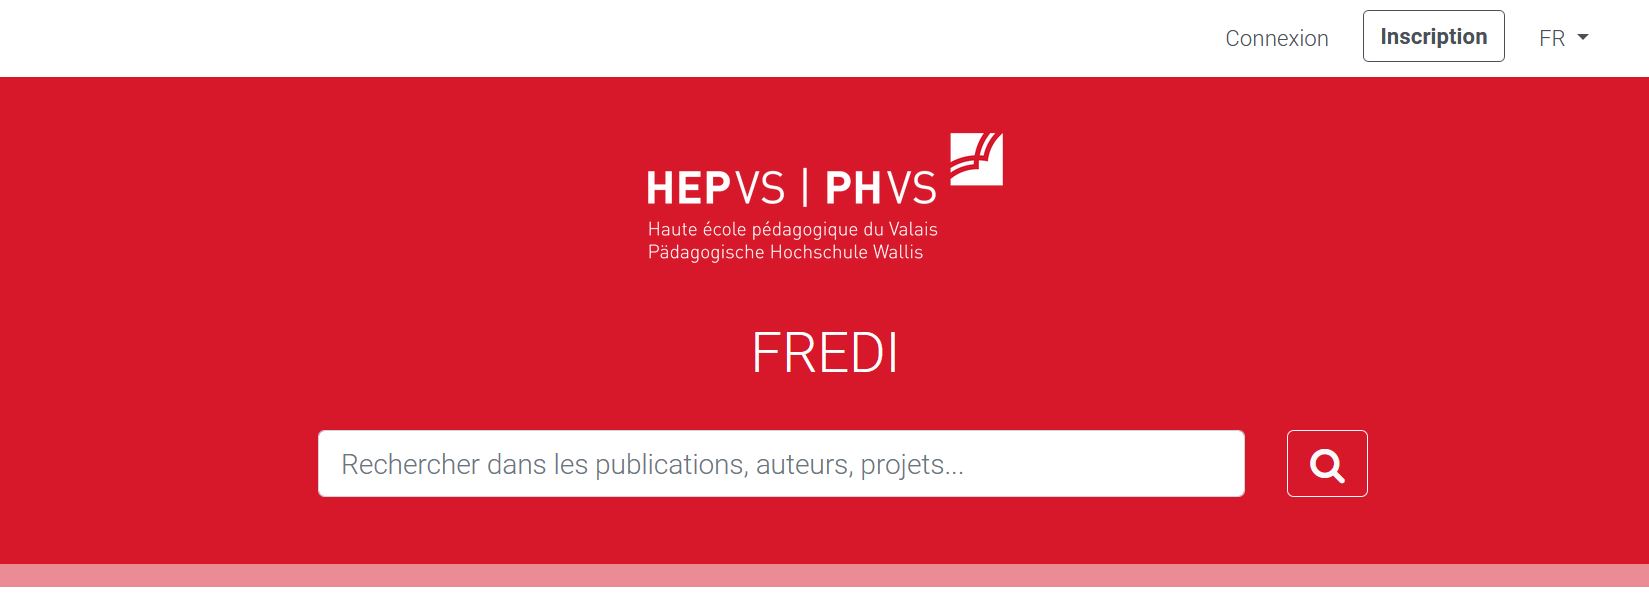 homepage_hepvs